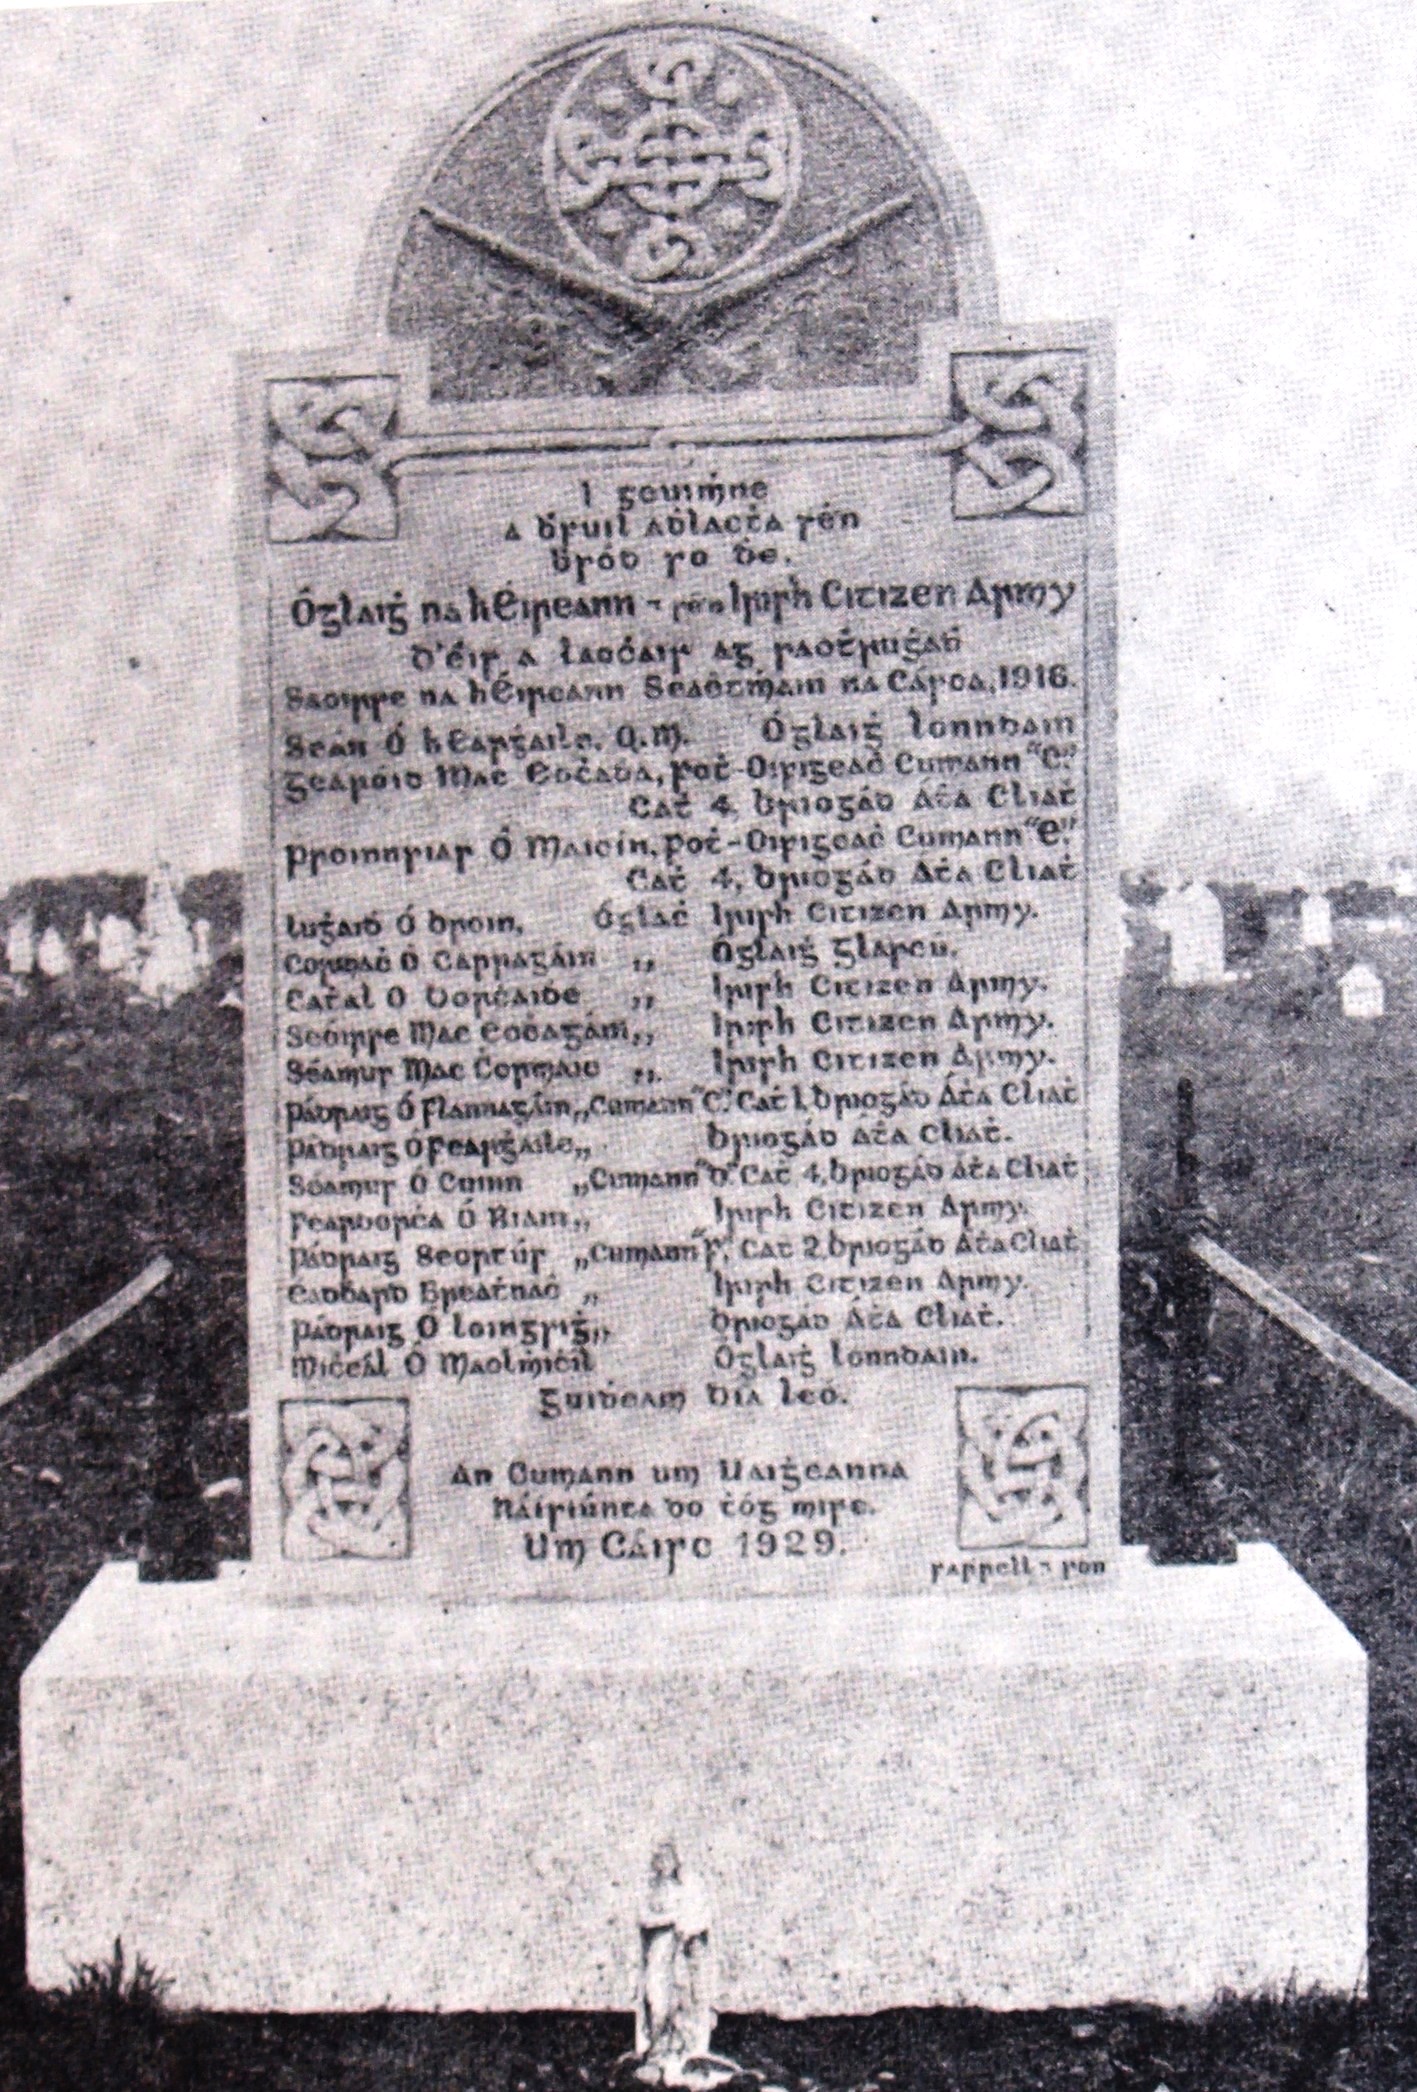 Remembering the fallen heroes, erected in 1929. 